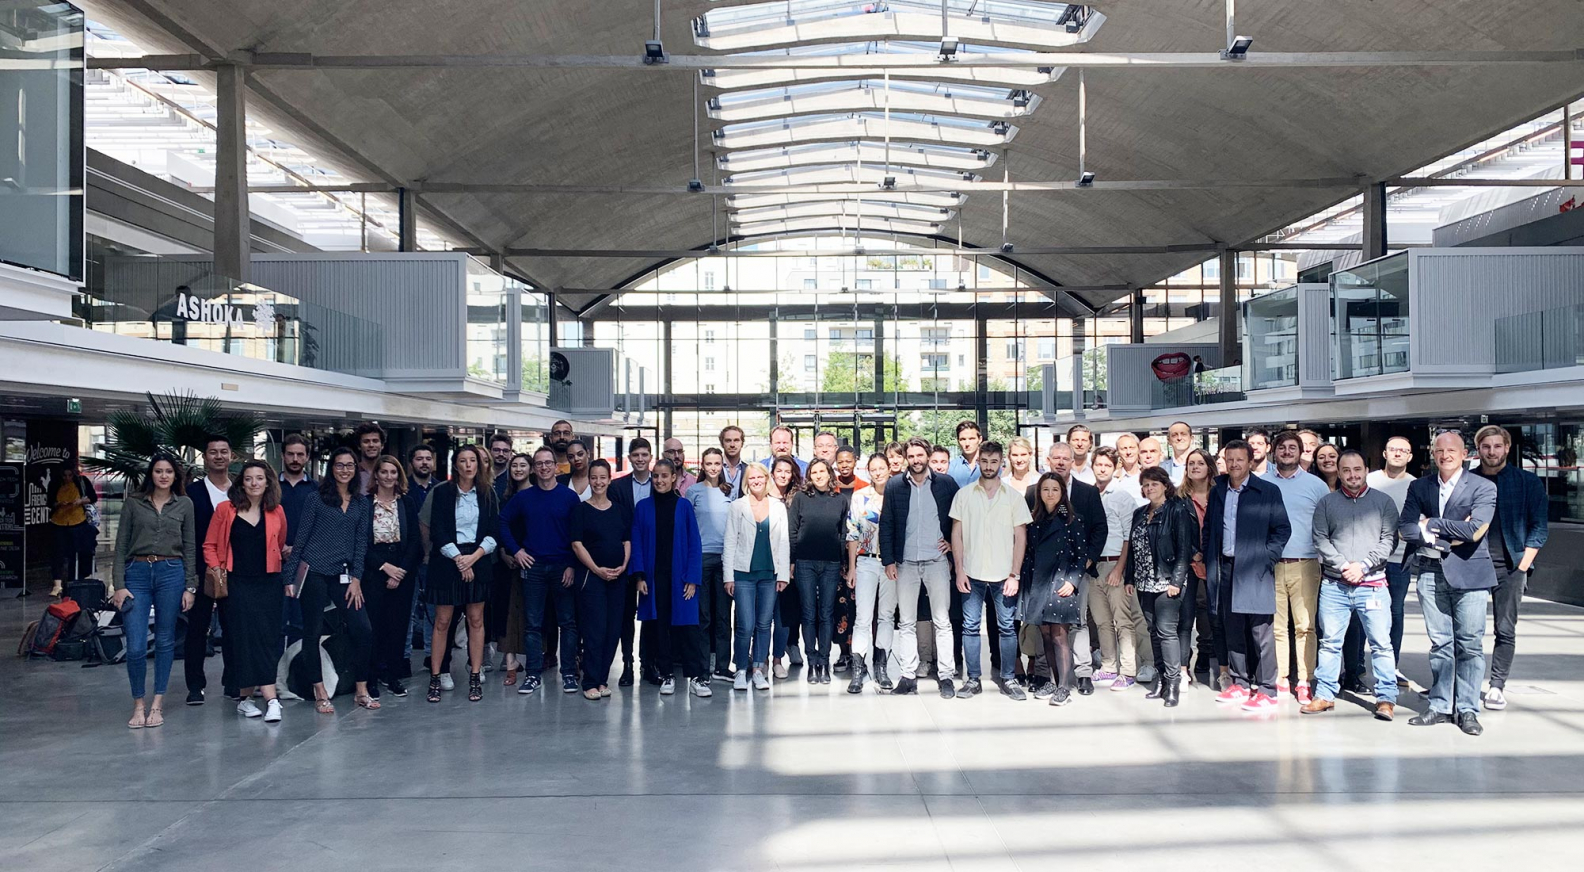 Data&Data joins forces with La Maisons Des Startups LVMH at Station F, Paris